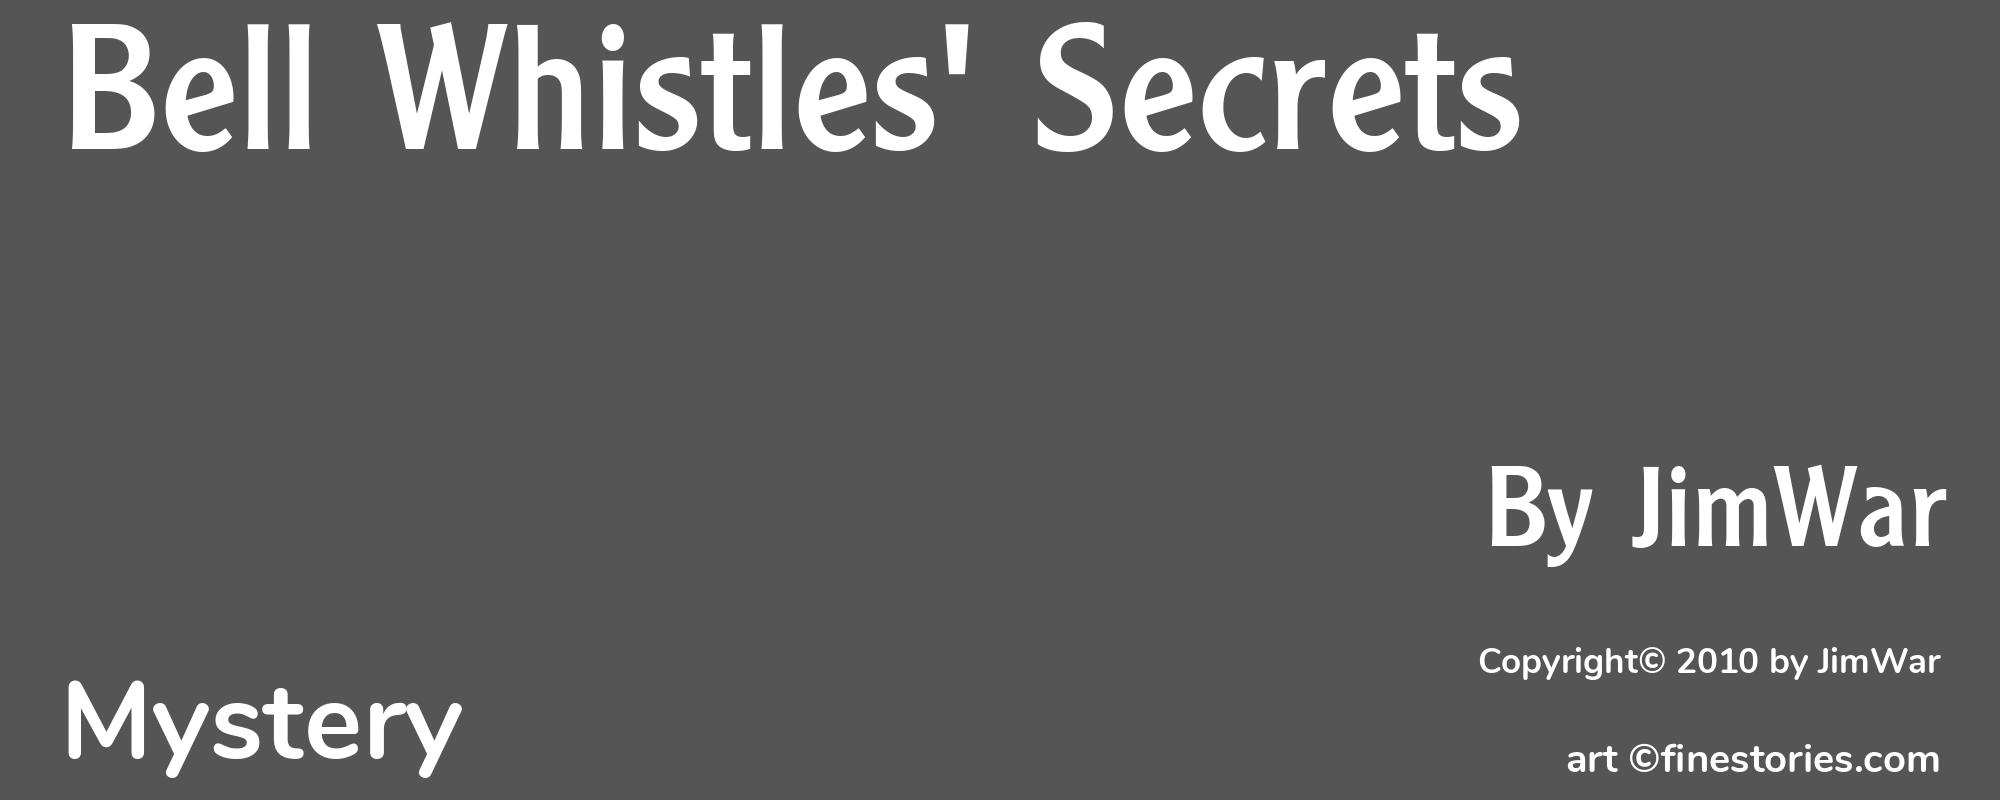 Bell Whistles' Secrets - Cover